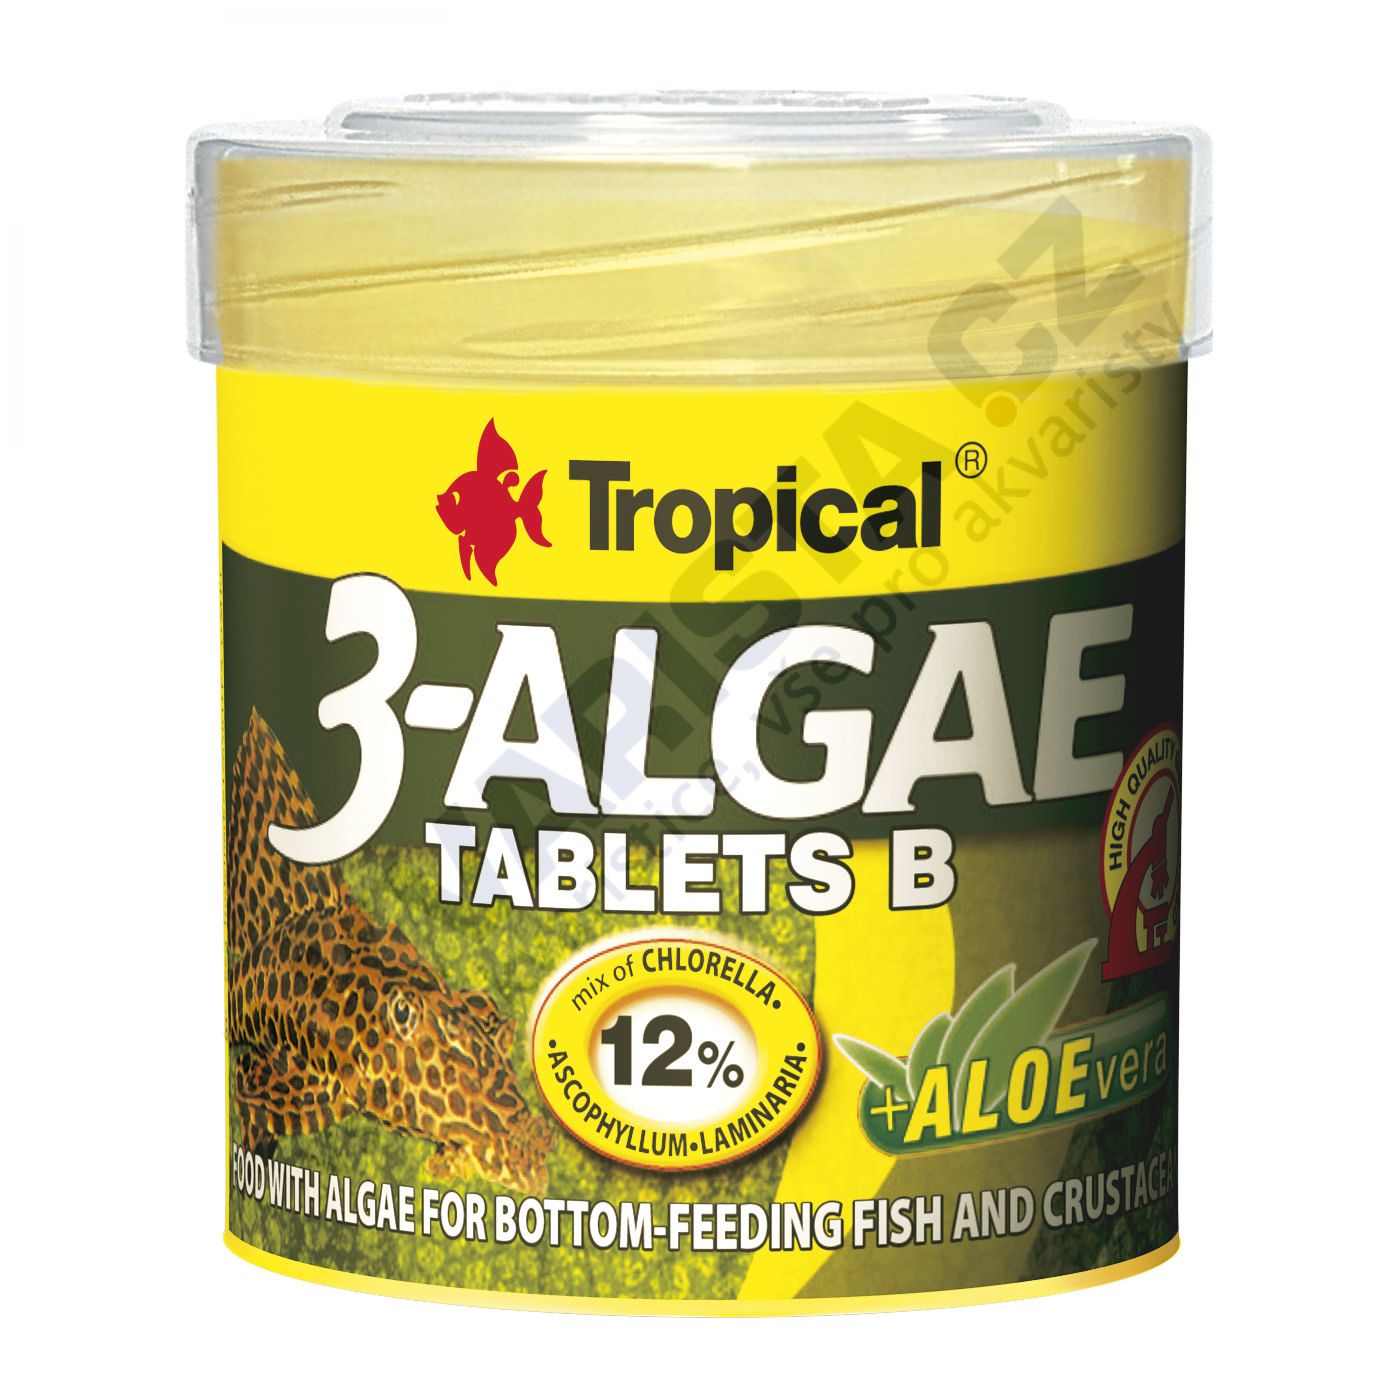 Tropical 3-algae tablets B (potápějící se tablety) 50 ml